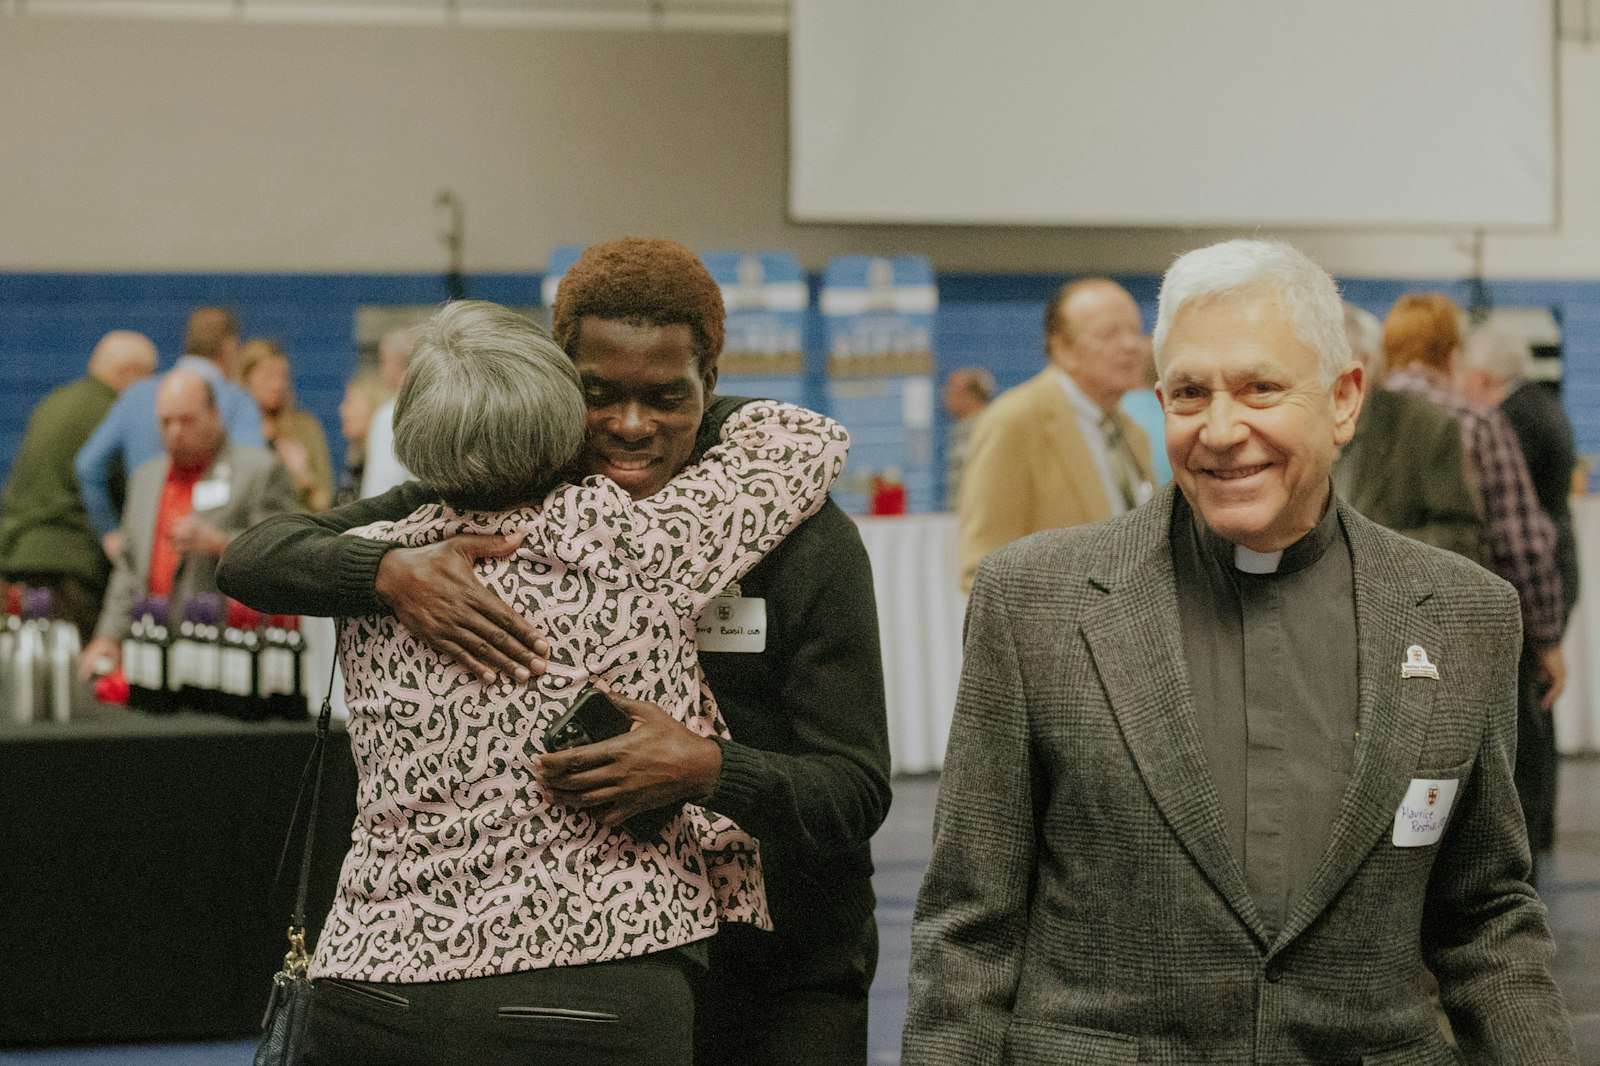 El hermano David Basil, OSB, recibe un abrazo de un simpatizante durante el evento de celebración de Catholic Central el 19 de noviembre mientras el p. Maurice Restivo, CSB, sonríe.